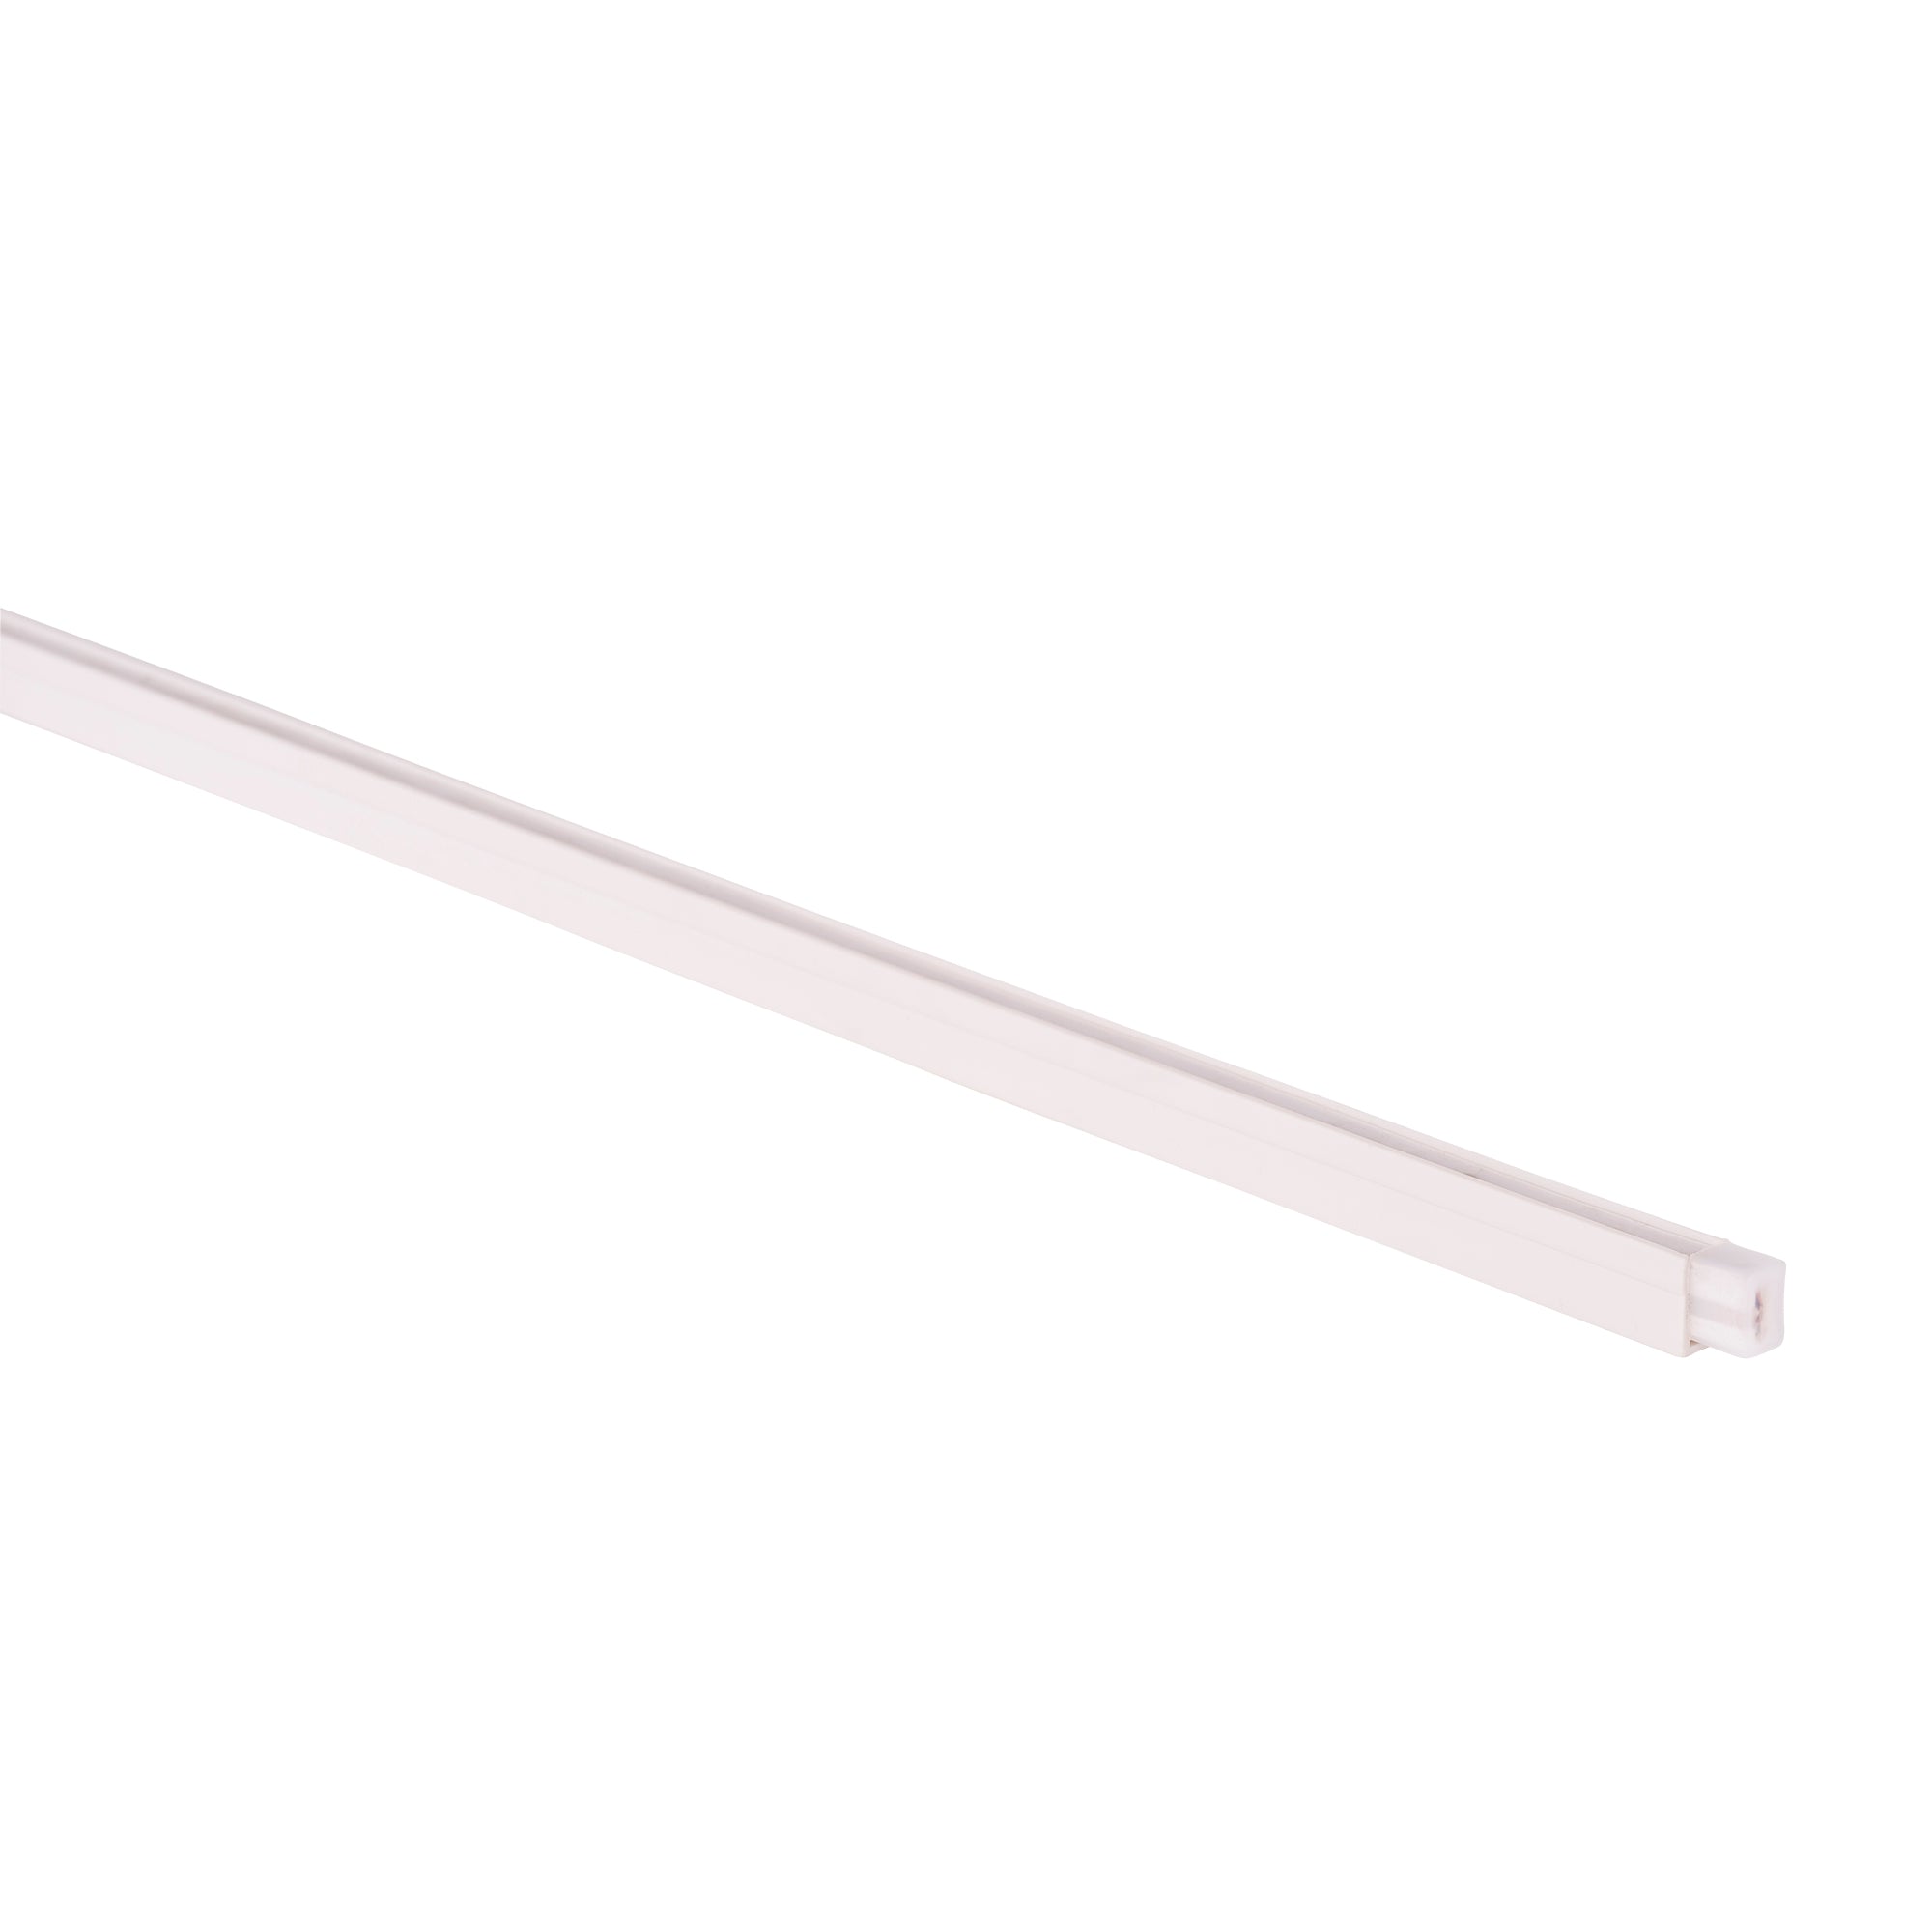 HV9792-PVC-Channel - PVC Channel to suit HV9792 Side Bend Flexible Neon LED Strip